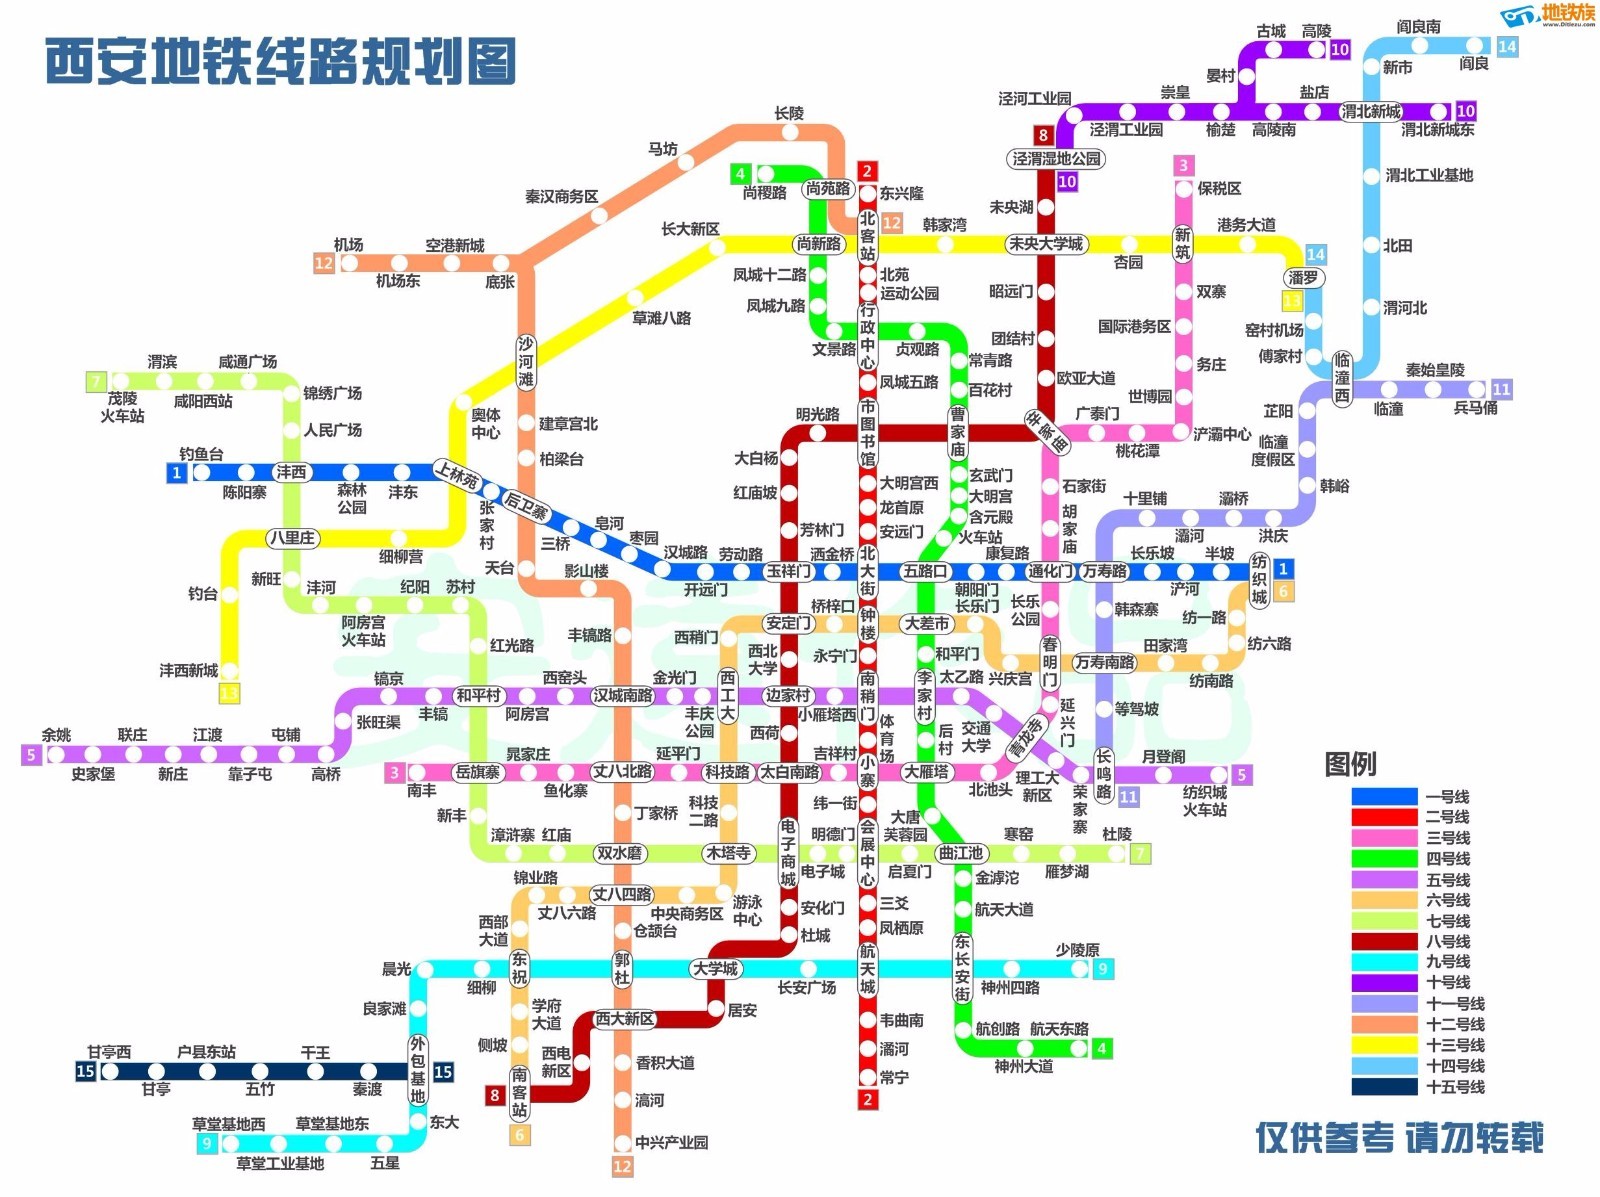 根据西安地铁近日发布的 关中城市群都市区城市轨道交通线网规划 未来